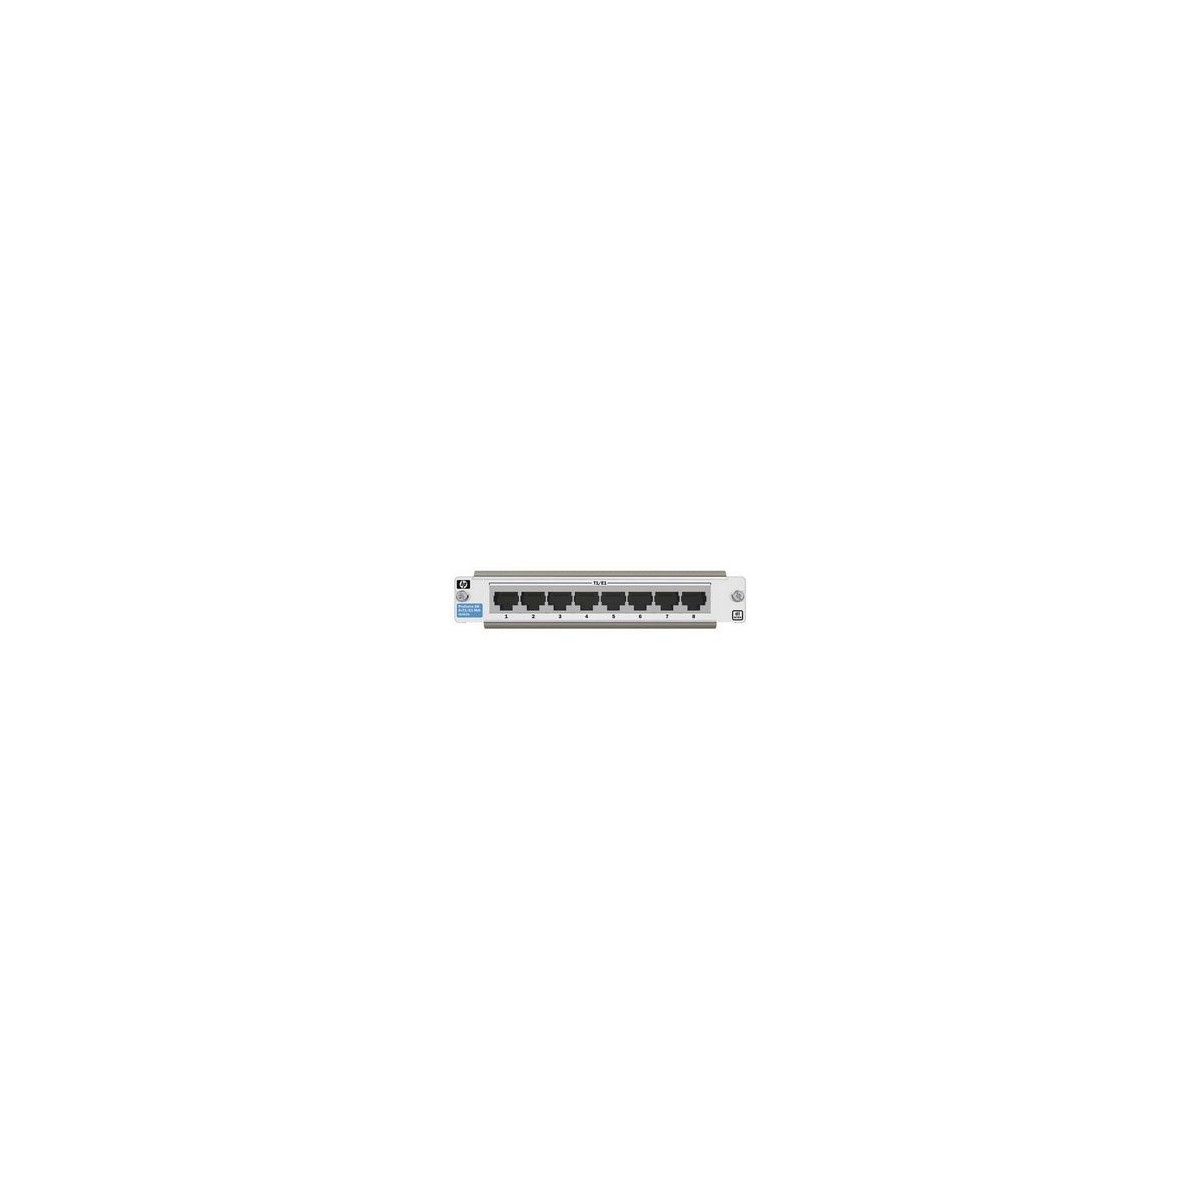 HPE 8-port 10GBase-T v2 - Gigabit Ethernet - 10,100,1000 Mbit/s - 1000BASE-T,1000BASE-TX,100BASE-TX,10BASE-T,10GBASE-T - 950 g